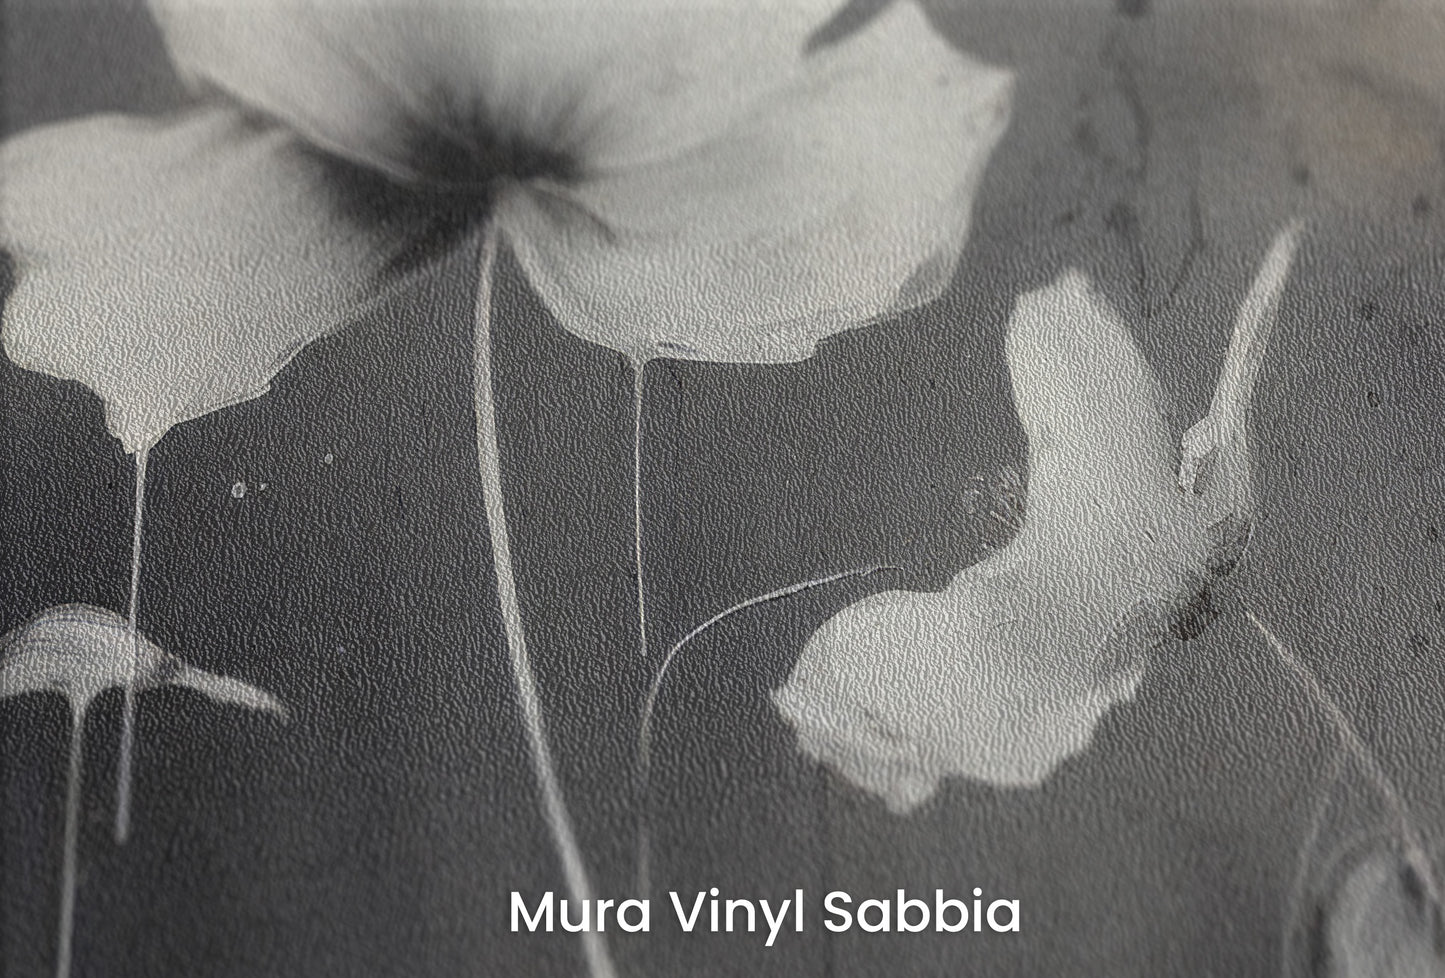 Zbliżenie na artystyczną fototapetę o nazwie MONOCHROME MEADOW na podłożu Mura Vinyl Sabbia struktura grubego ziarna piasku.